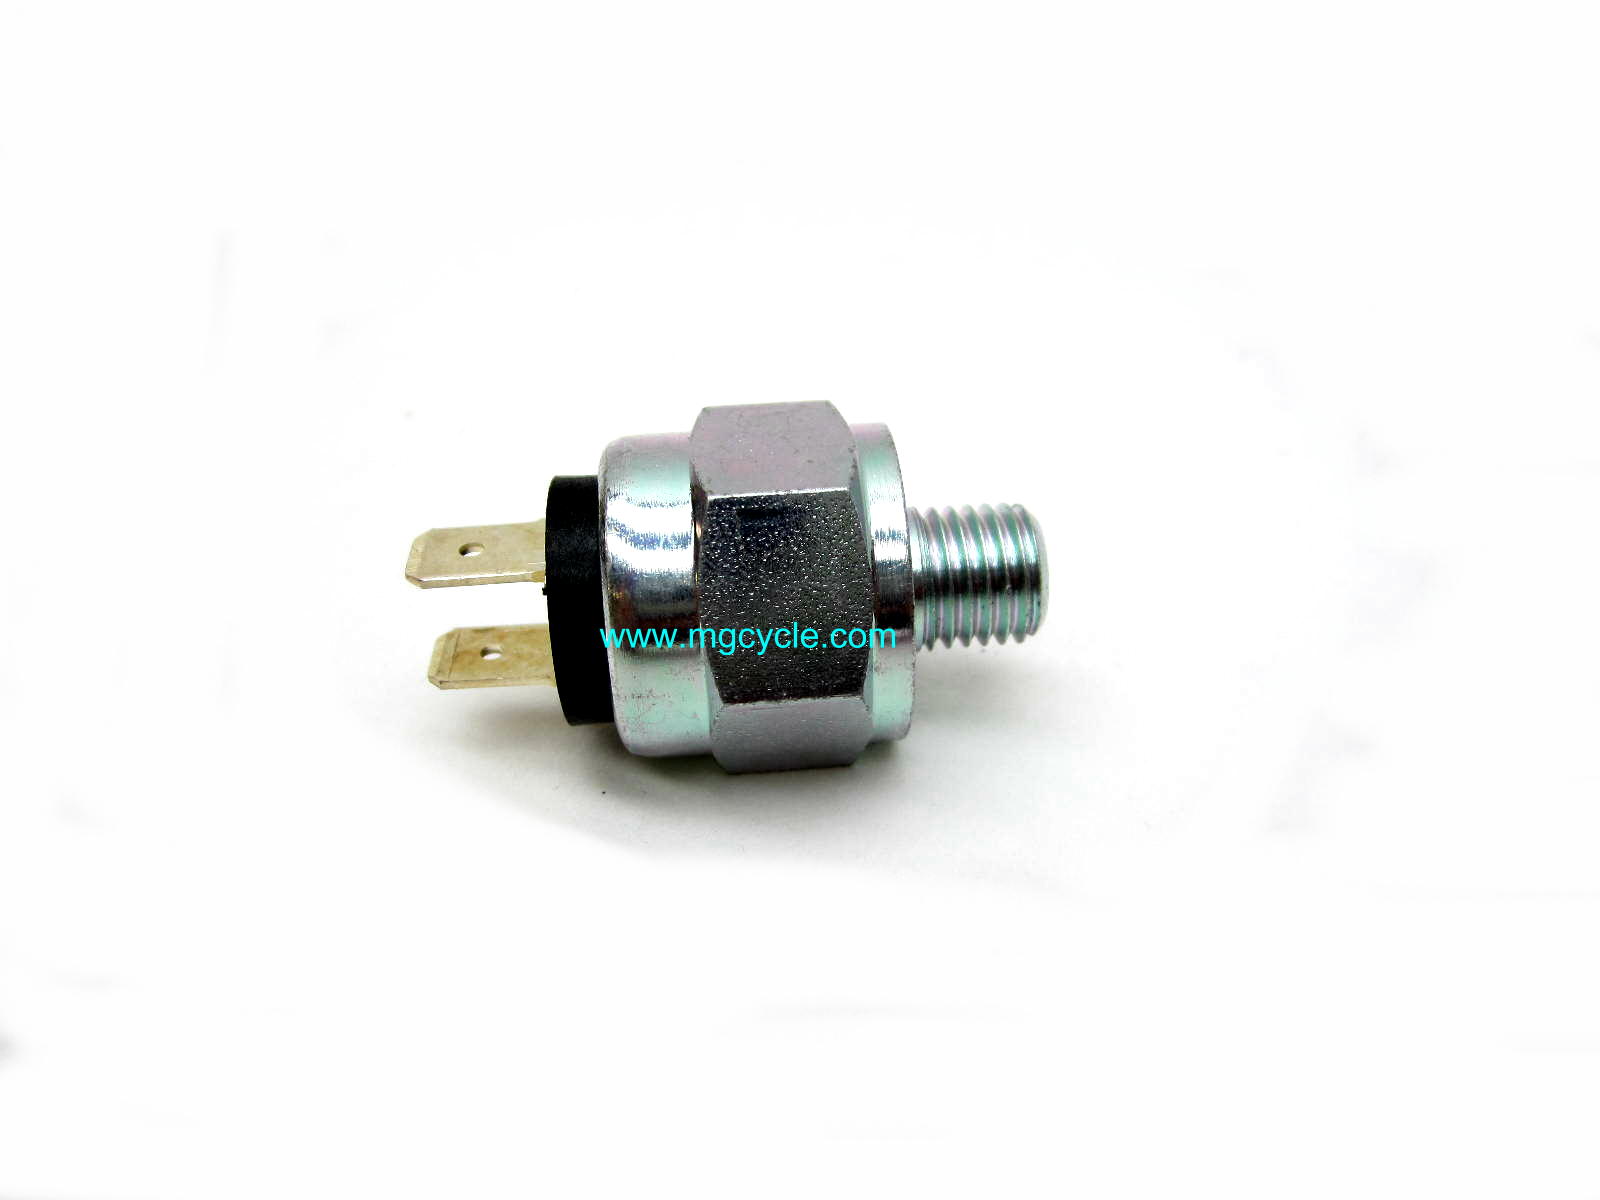 Brake light switch 850T V50 3 Disk Eldorado plug type 1.25 pitch - Click Image to Close